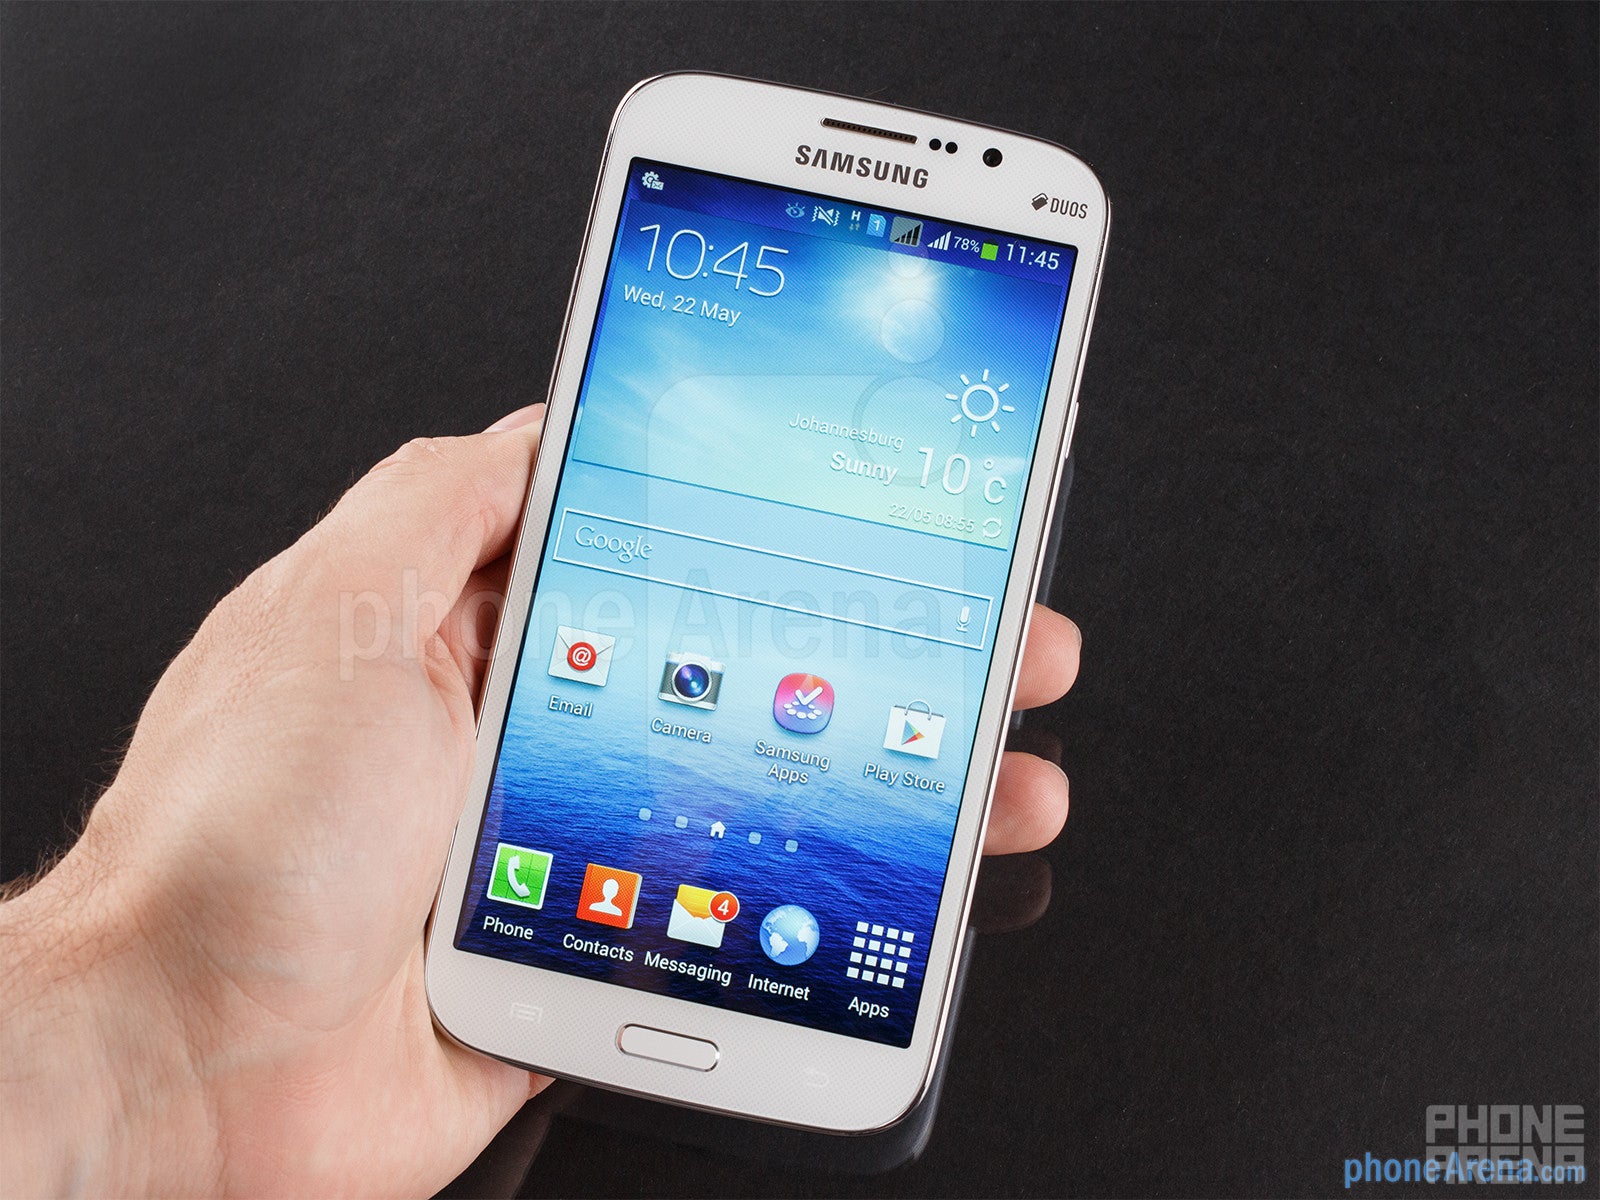 Samsung Galaxy Mega 5.8 Review